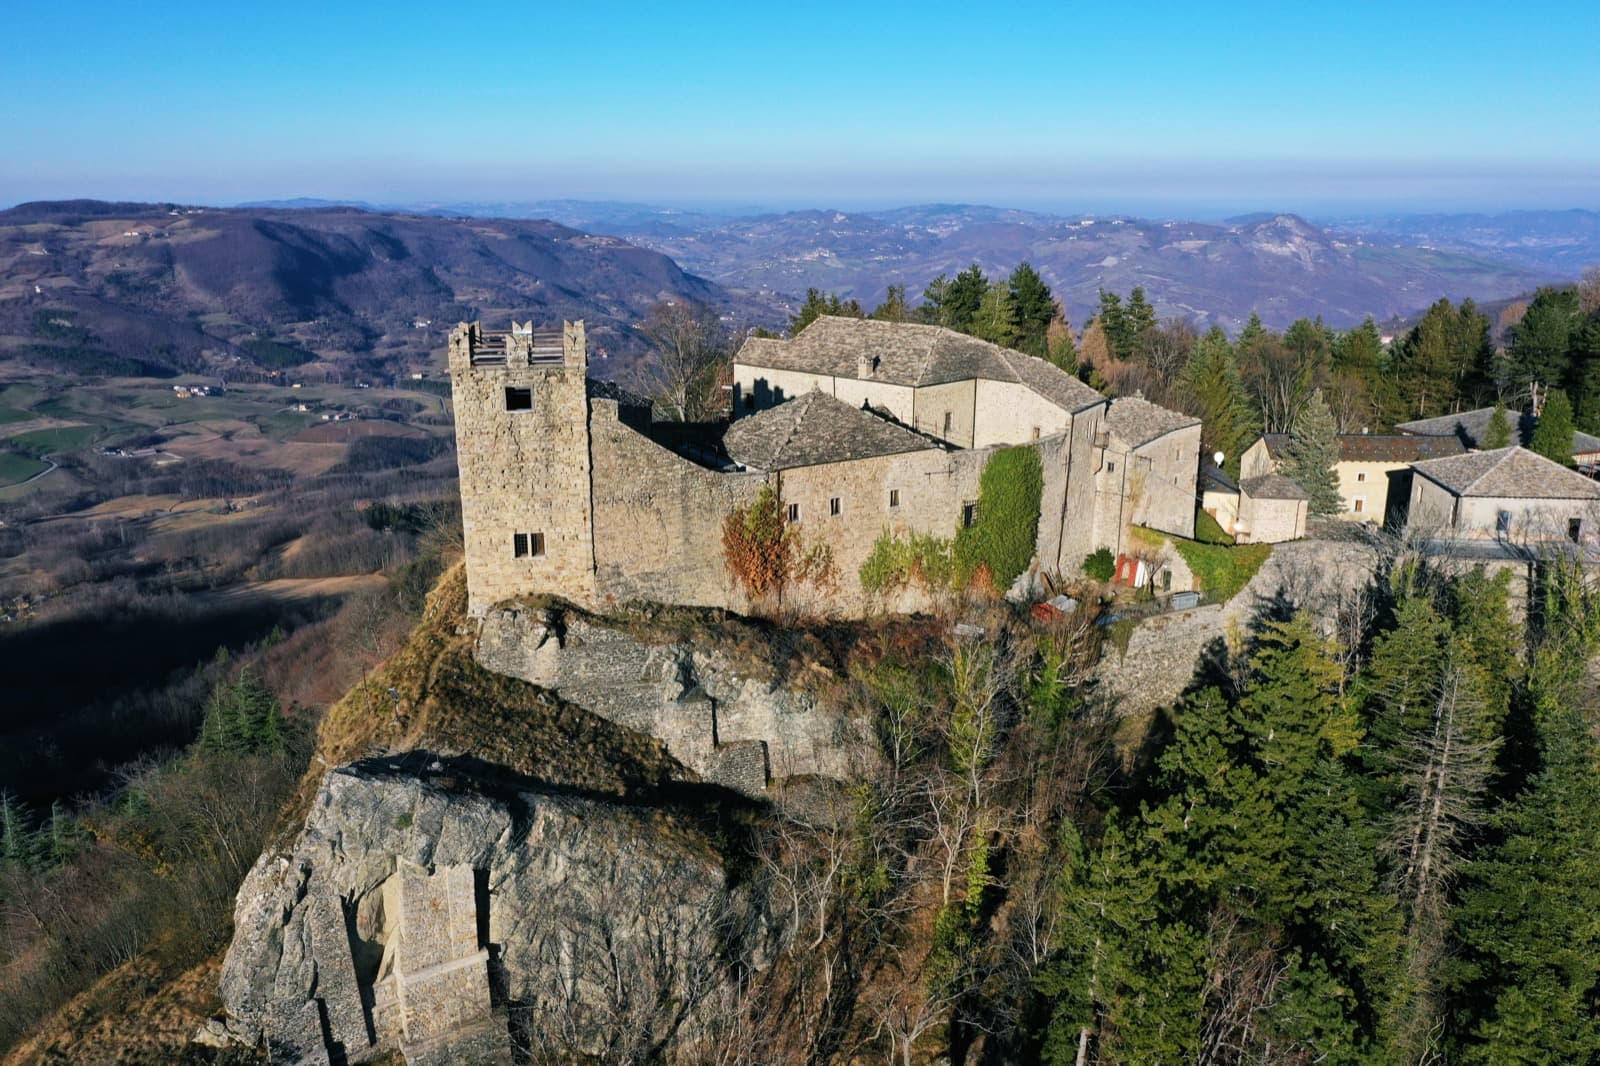 Sestola: the mountain fortress